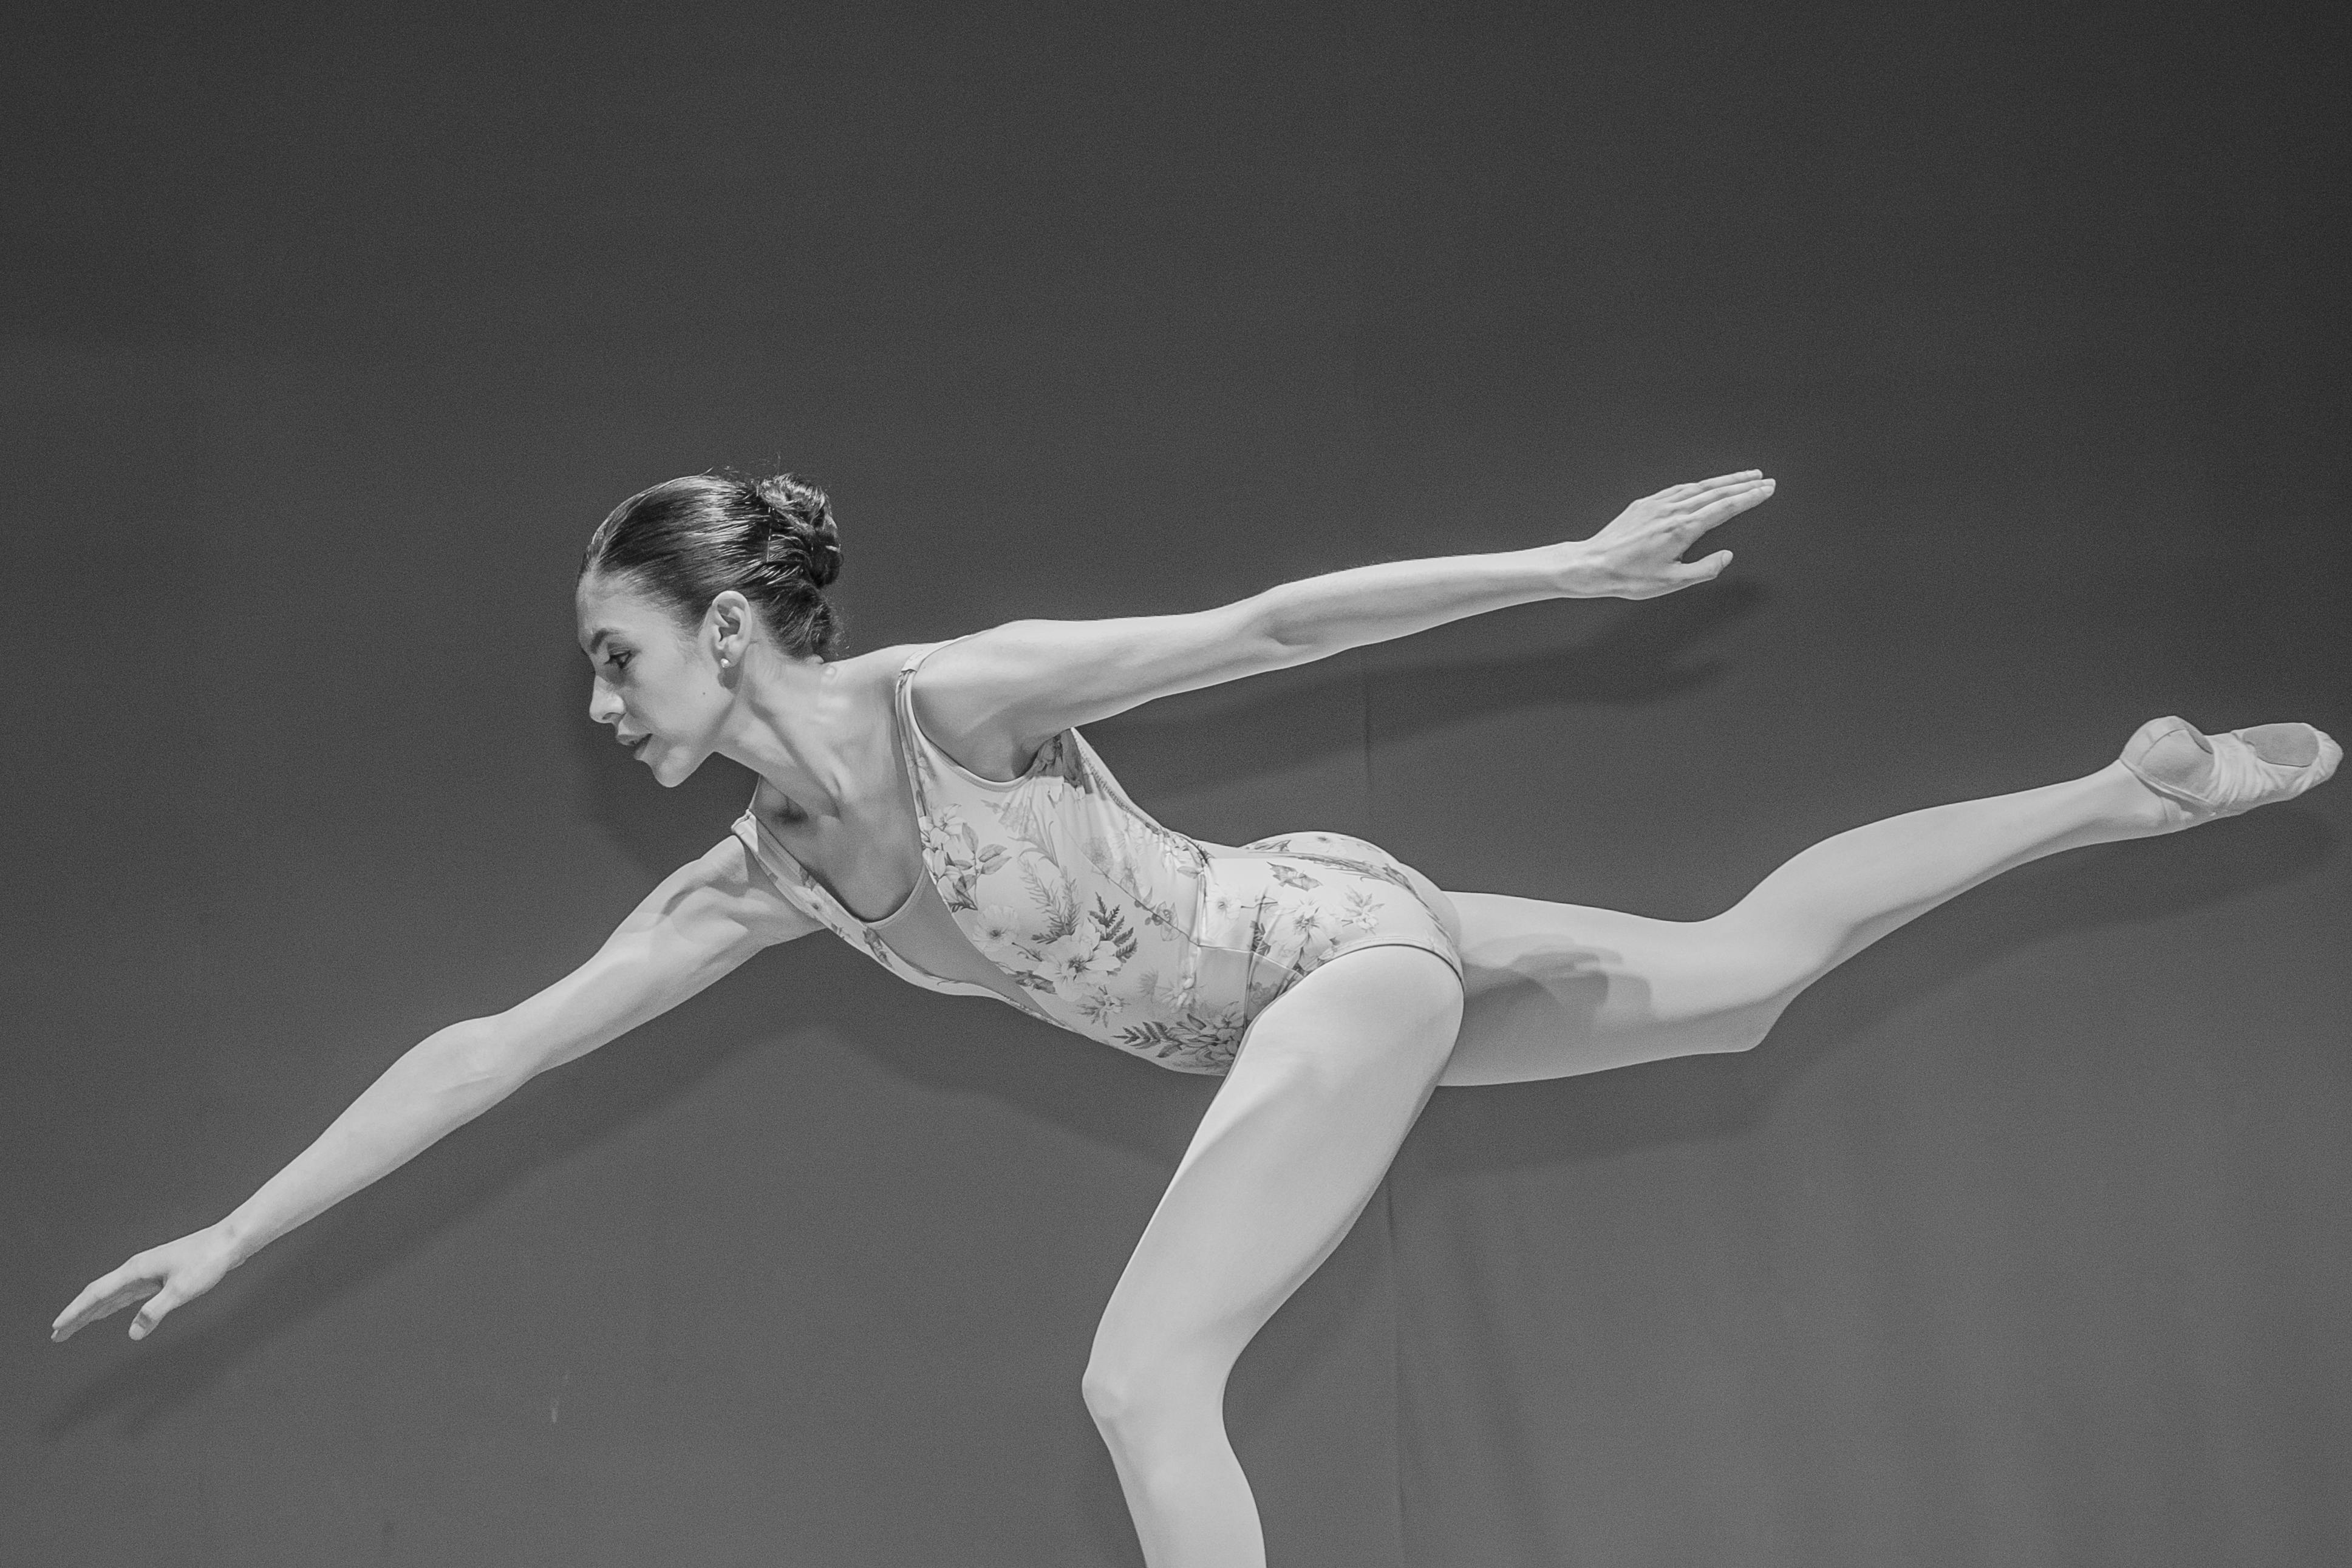 You are beautiful.: Idea for intermediate dance pose for ballerinas: passé  relevé